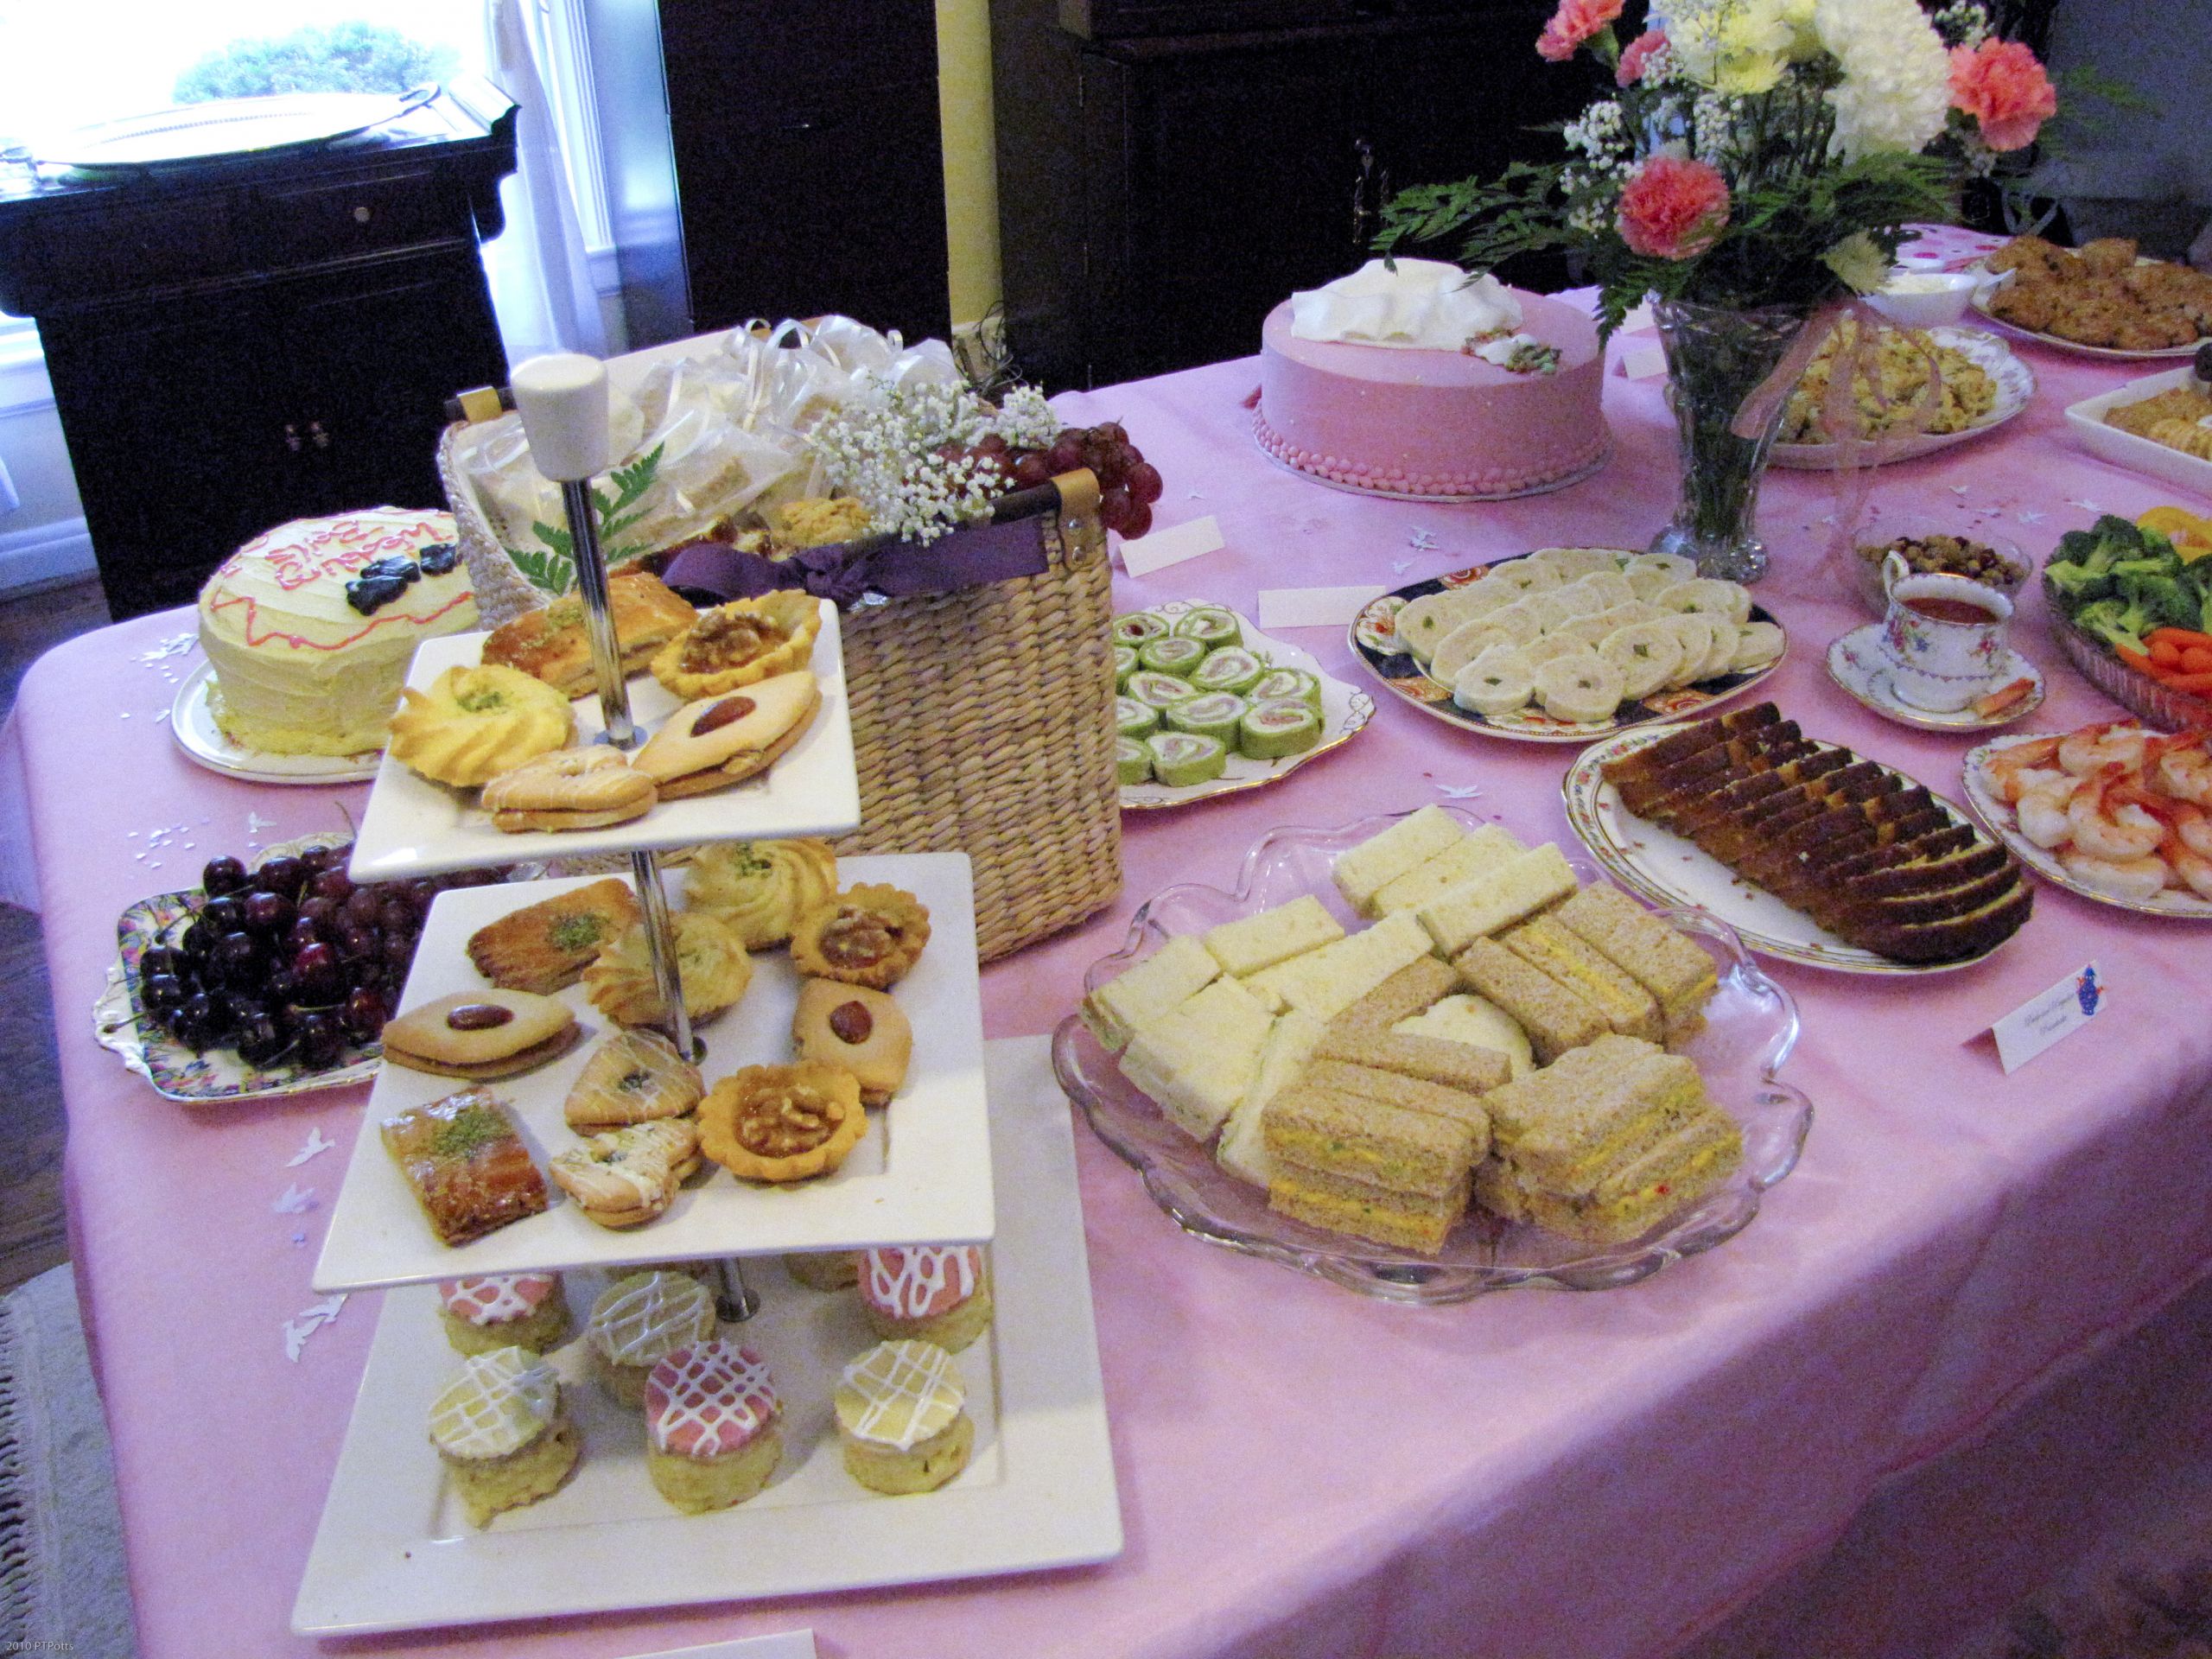 Bridal Shower Tea Party Food Ideas
 A Jane Austen Tea Party Bridal Shower